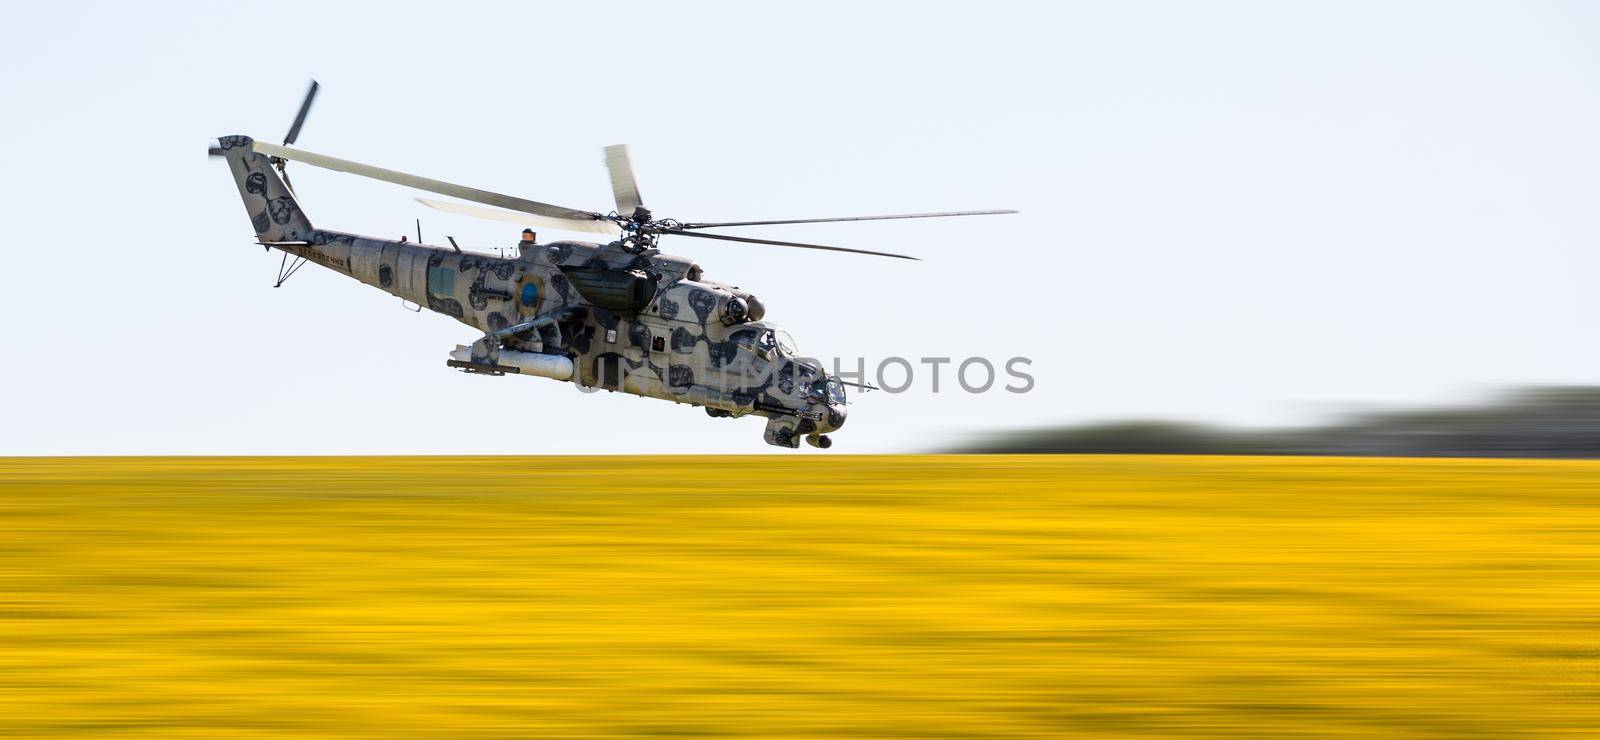 DONETSK REG, UKRAINE - Aug 02, 2015: Ukrainian military helicopter Mi-24 (Hind) in flight on combat duty in the area of the antiterrorist operation